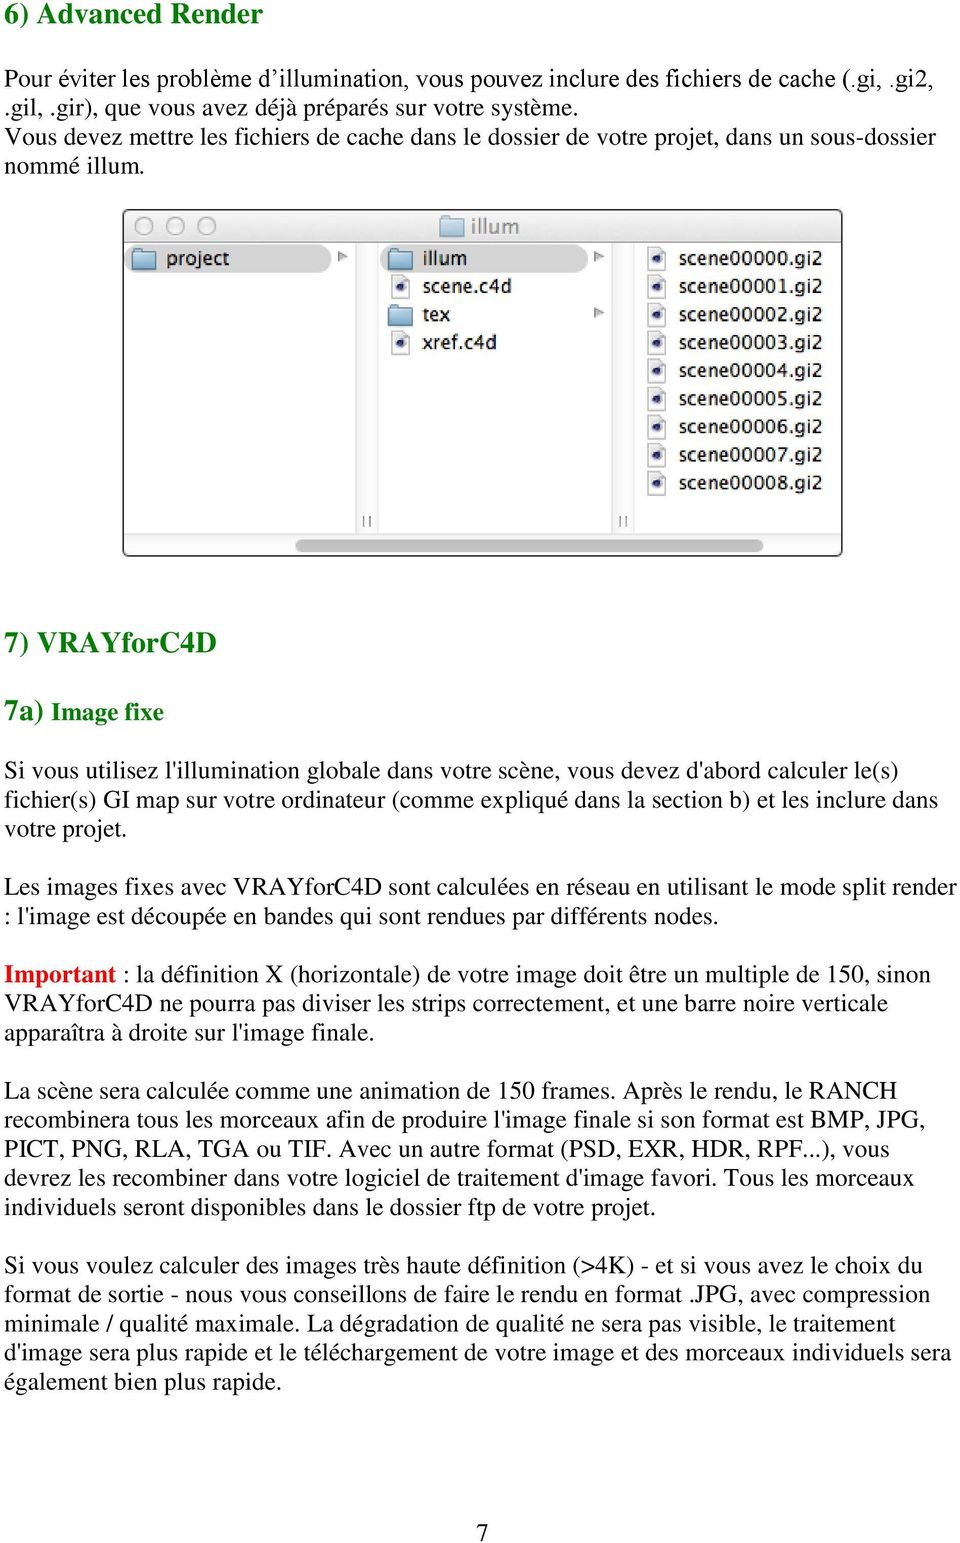 7) VRAYforC4D 7a) Image fixe Si vous utilisez l'illumination globale dans votre scène, vous devez d'abord calculer le(s) fichier(s) GI map sur votre ordinateur (comme expliqué dans la section b) et